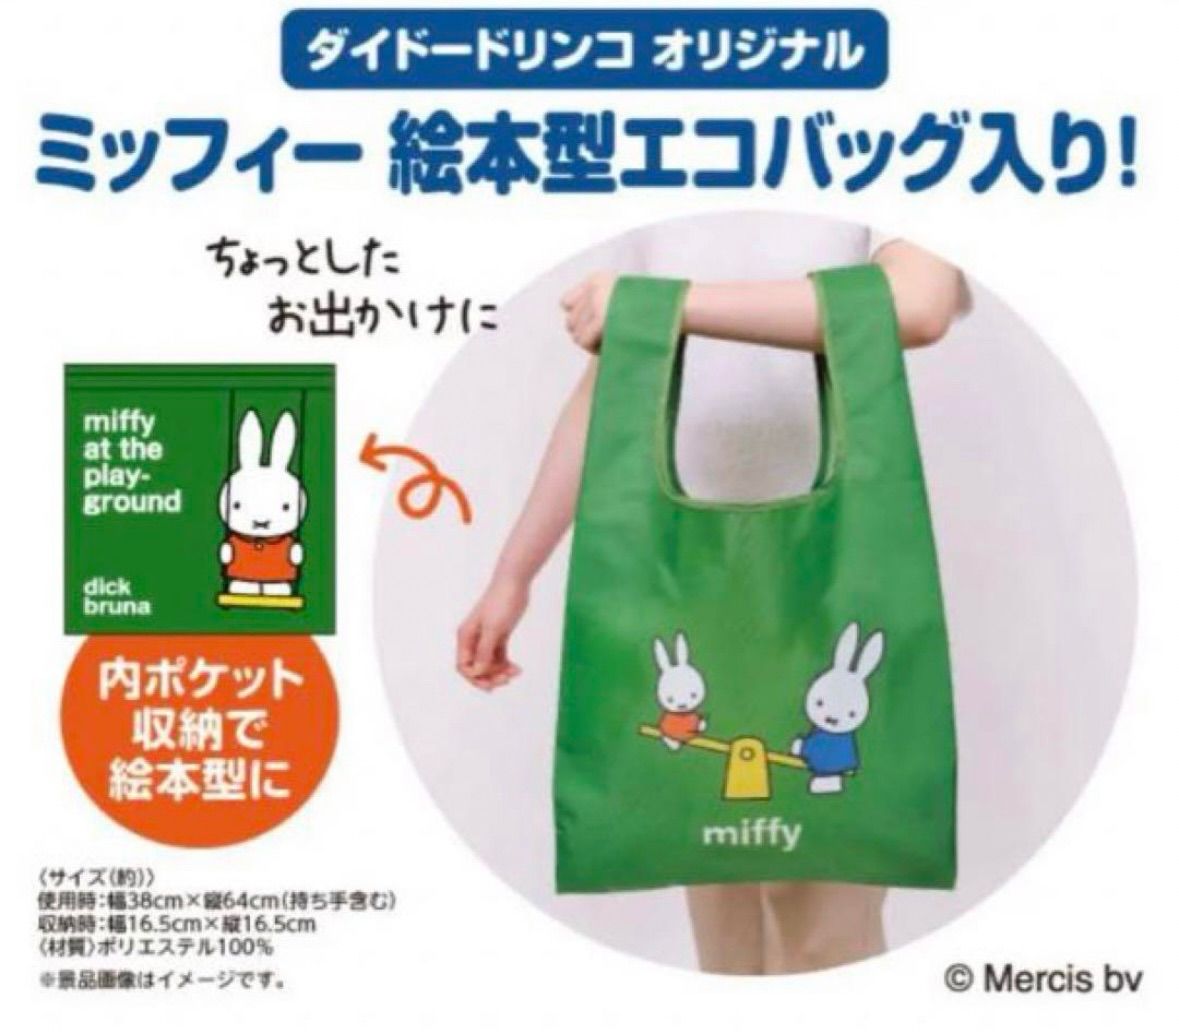 miffy ☆ ミッフィー ダイドー ドリンコ 非売品 ノベルティ 未開封 最新 たためる 絵本型 マイ エコ バッグ 2種 2枚 セット ショッピング